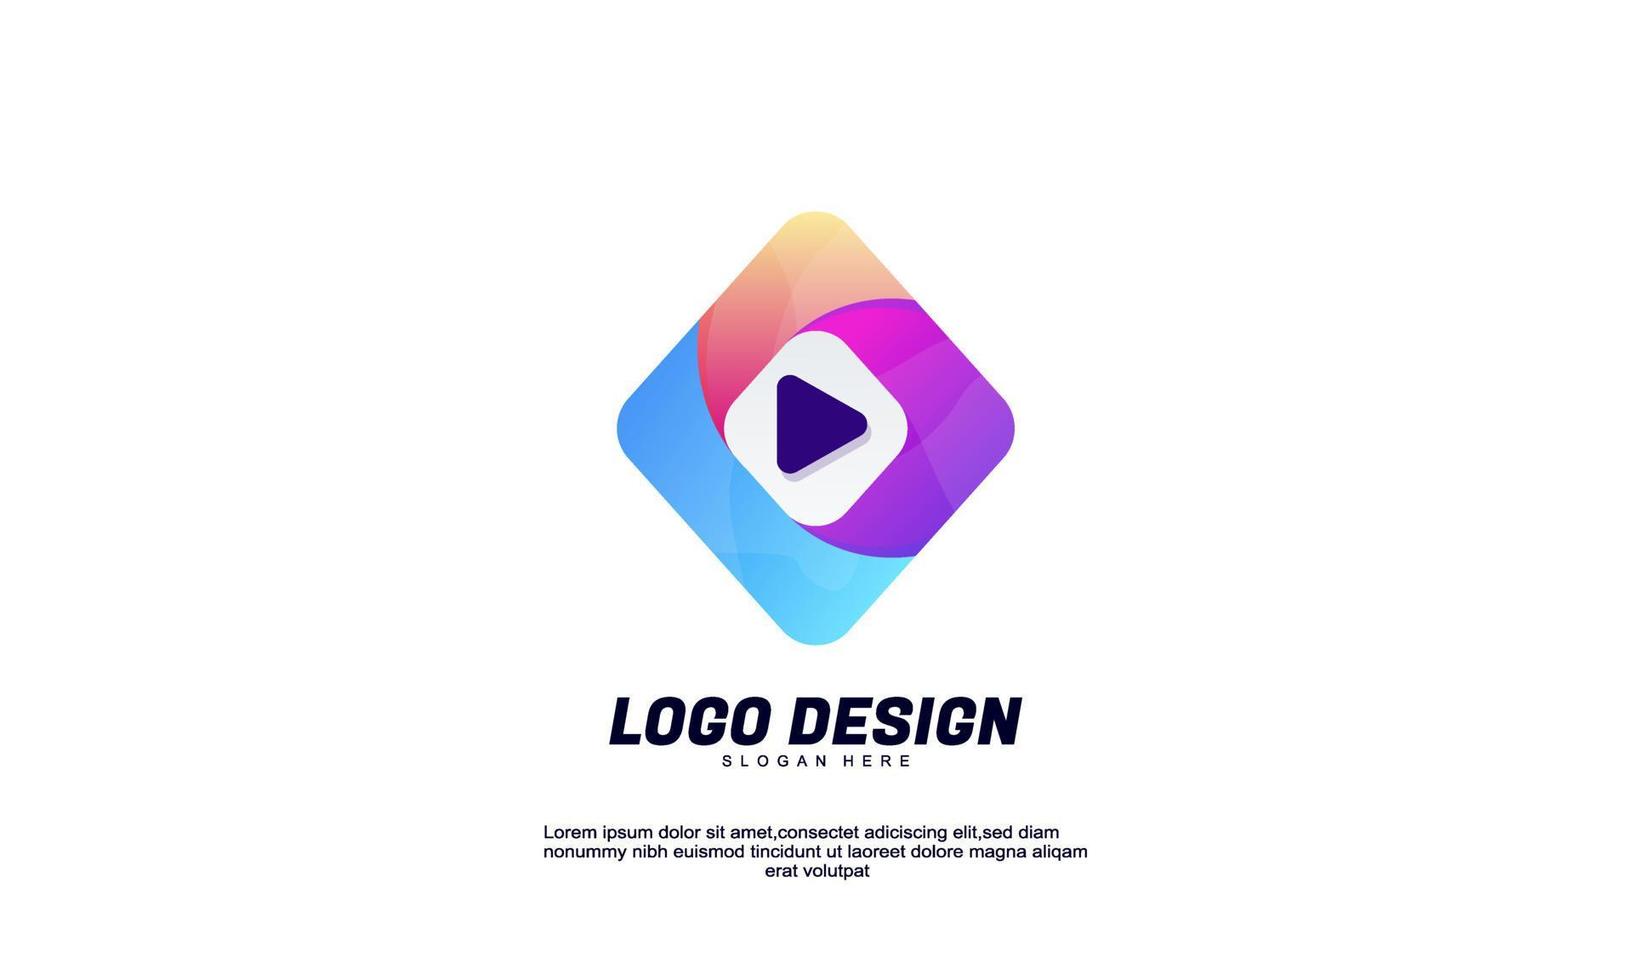 voorraad vector abstract creatief logo idee rechthoek en speel media voor merkidentiteit bedrijf of bedrijf gradiënt kleur ontwerpsjabloon